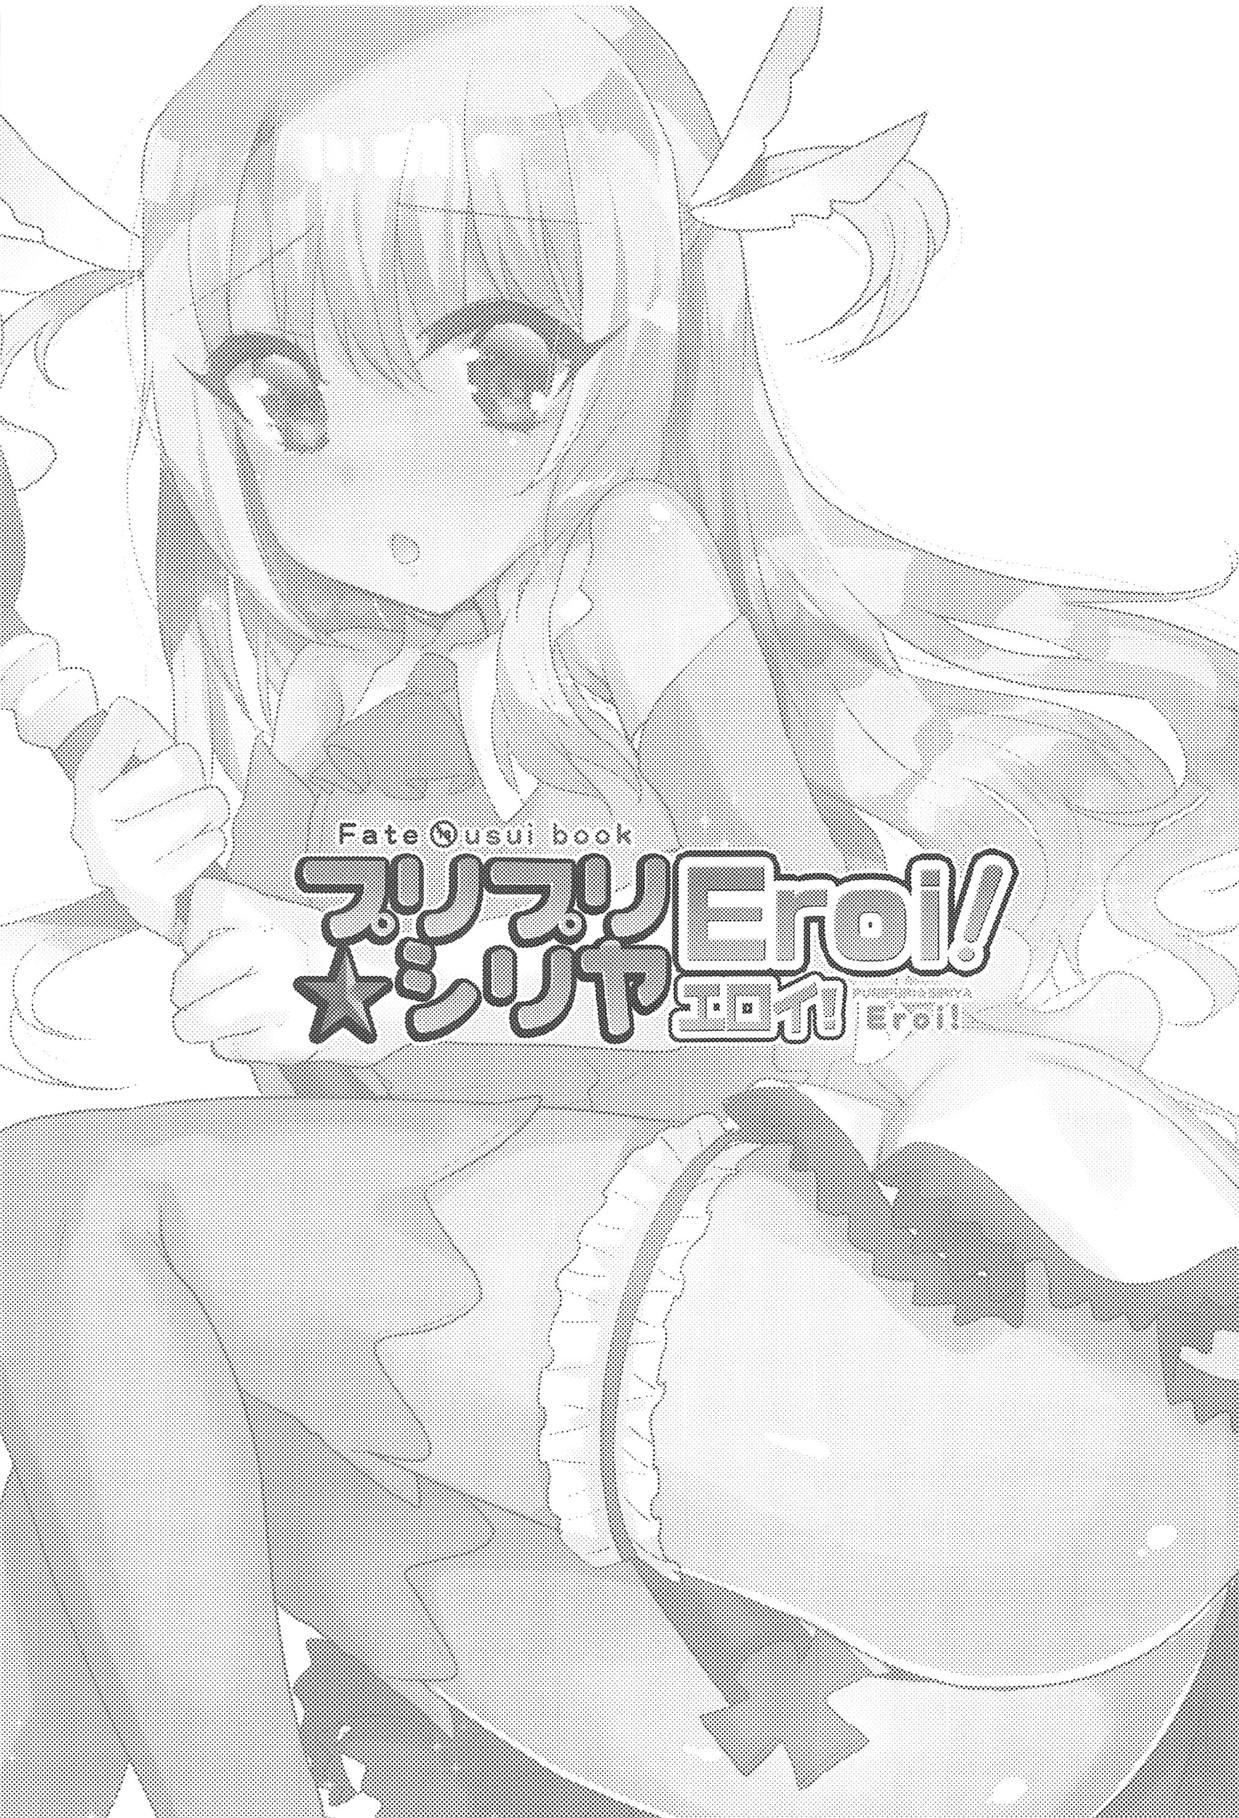 3way PURIPURI☆SIRIYA Eroi! - Fate kaleid liner prisma illya European - Picture 2